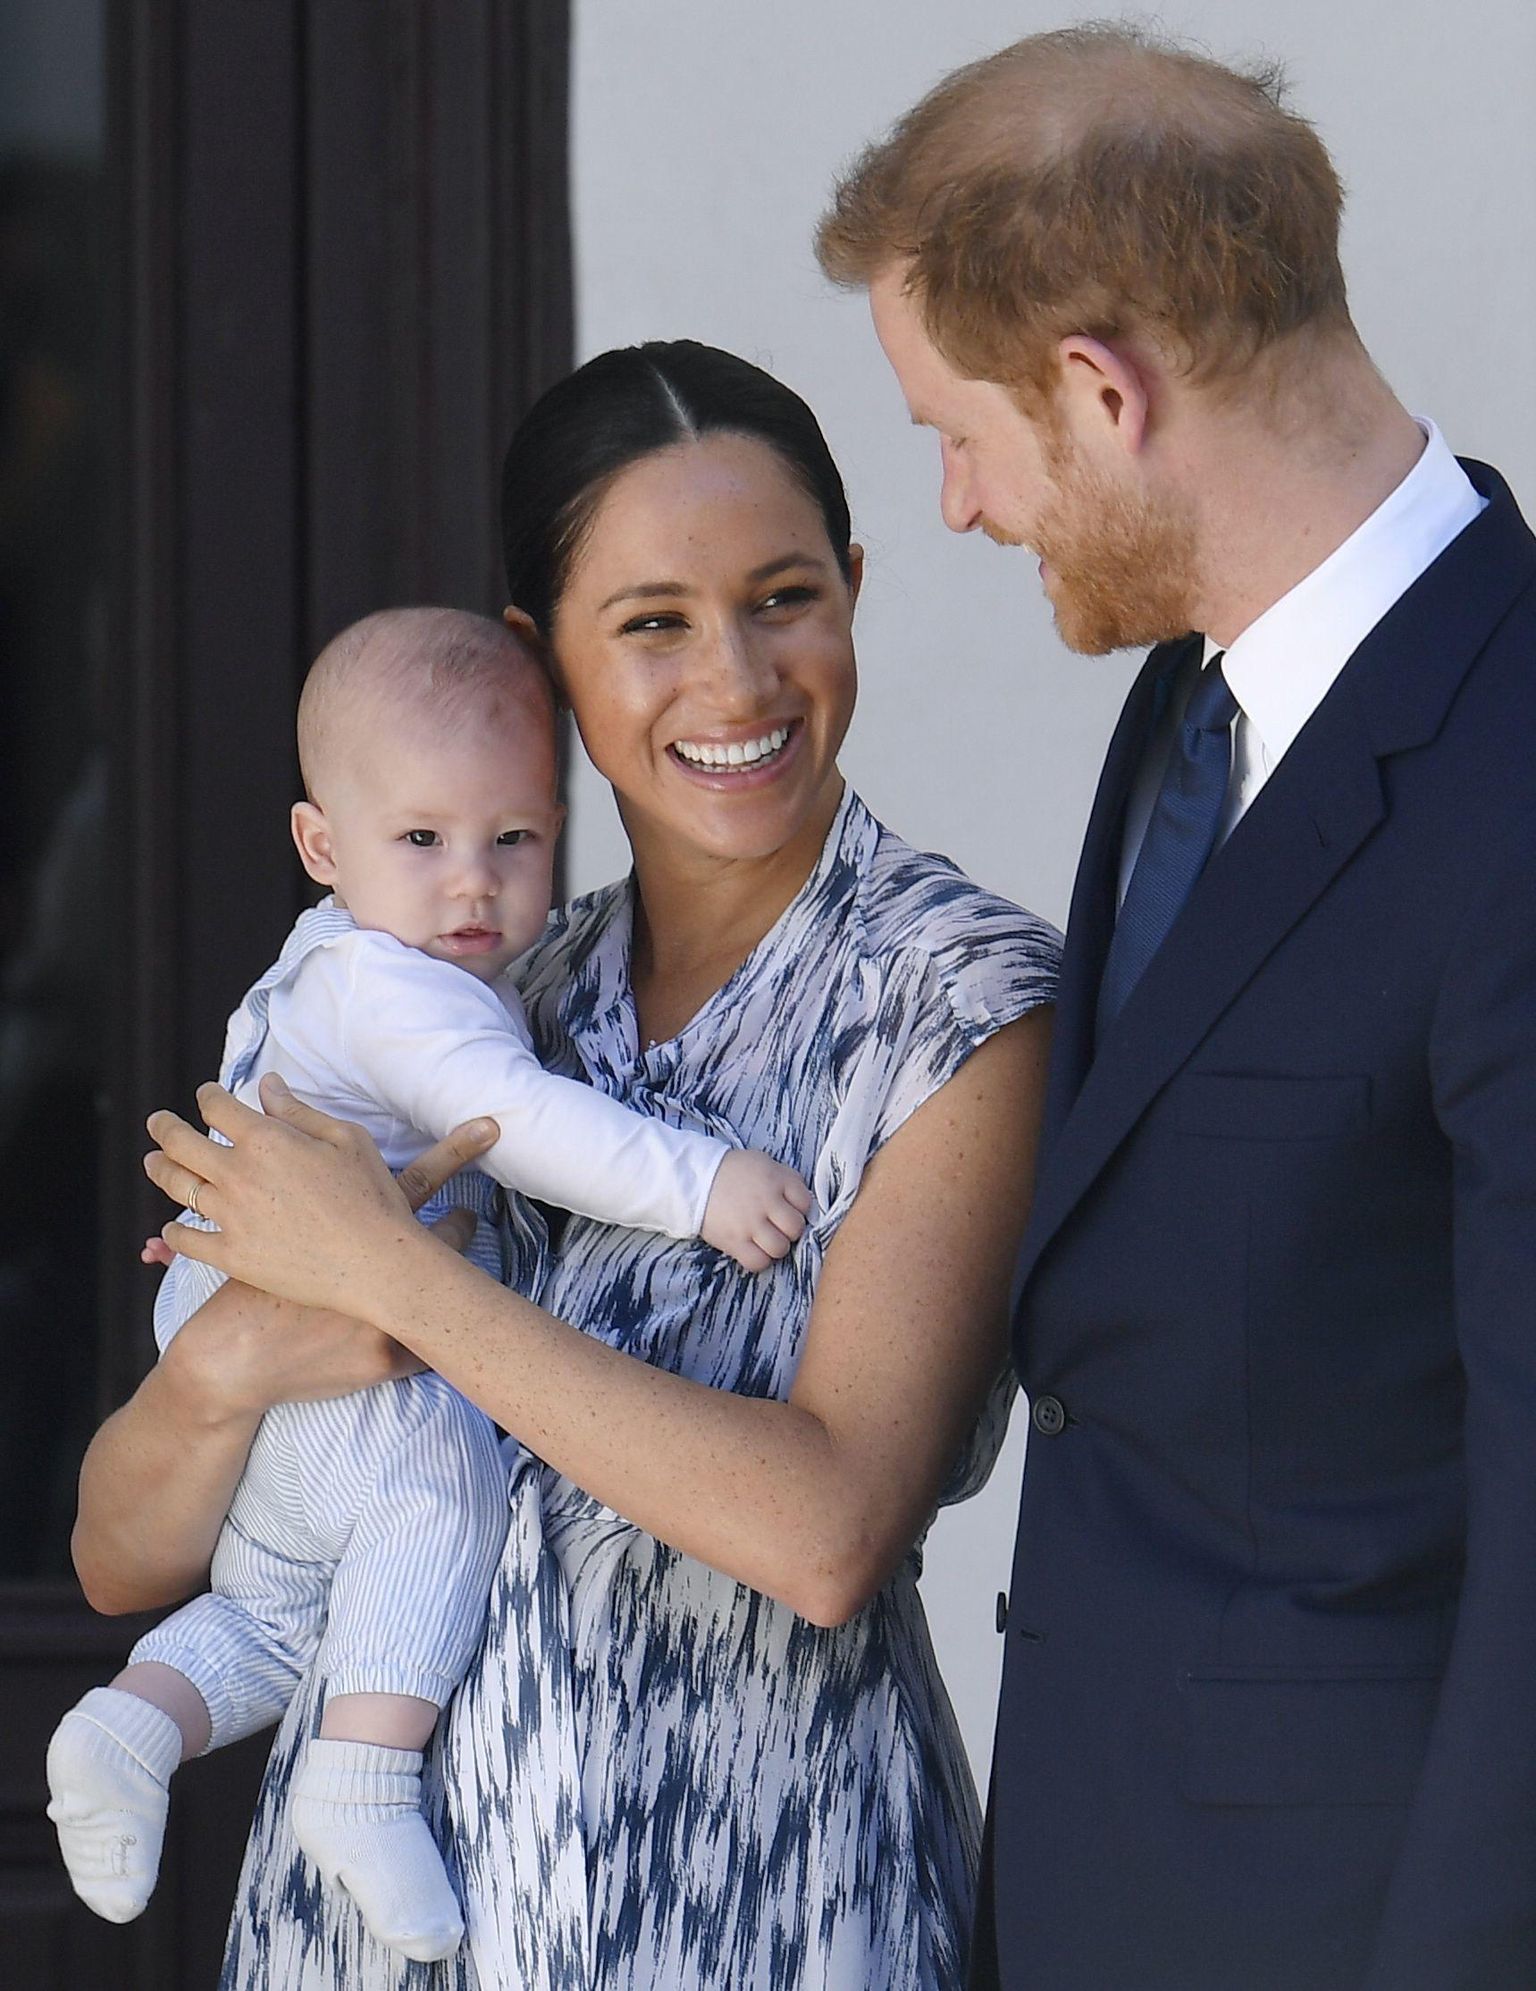 Prints Harry ja tema abikaasa hertsoginna Meghan oma esiklapse Archiega 2019. aasta septembris Lõuna-Aafrika Vabariigis. Paari nädal tagasi sündinud tütrest Lilibet Dianast pole seni fotosid avaldatud.